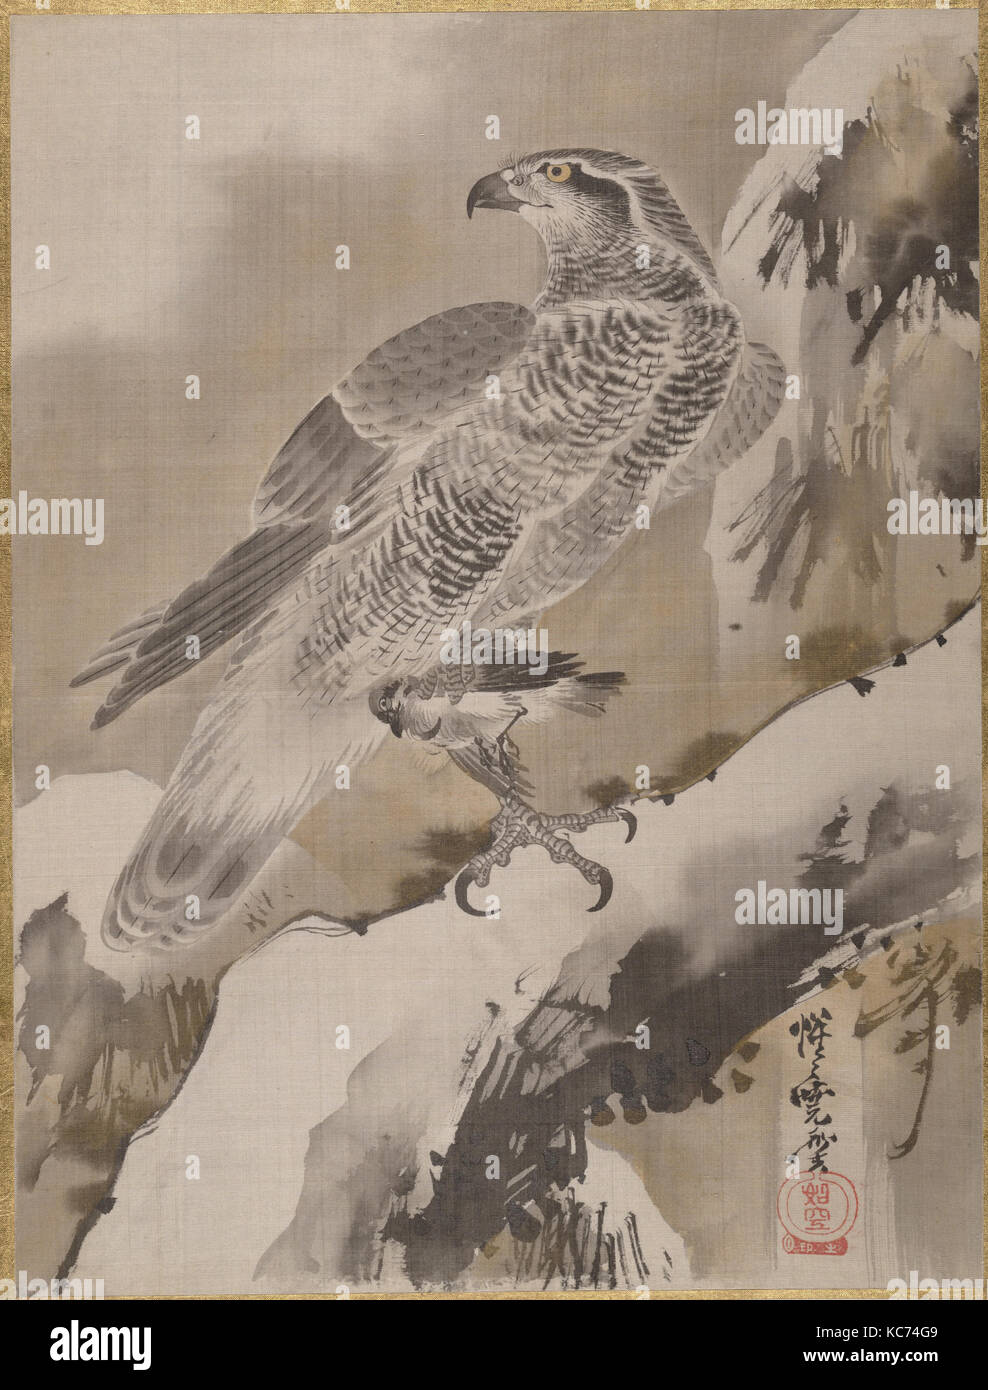 Eagle Holding Small Bird, Kawanabe Kyōsai, ca. 1887 Stock Photo